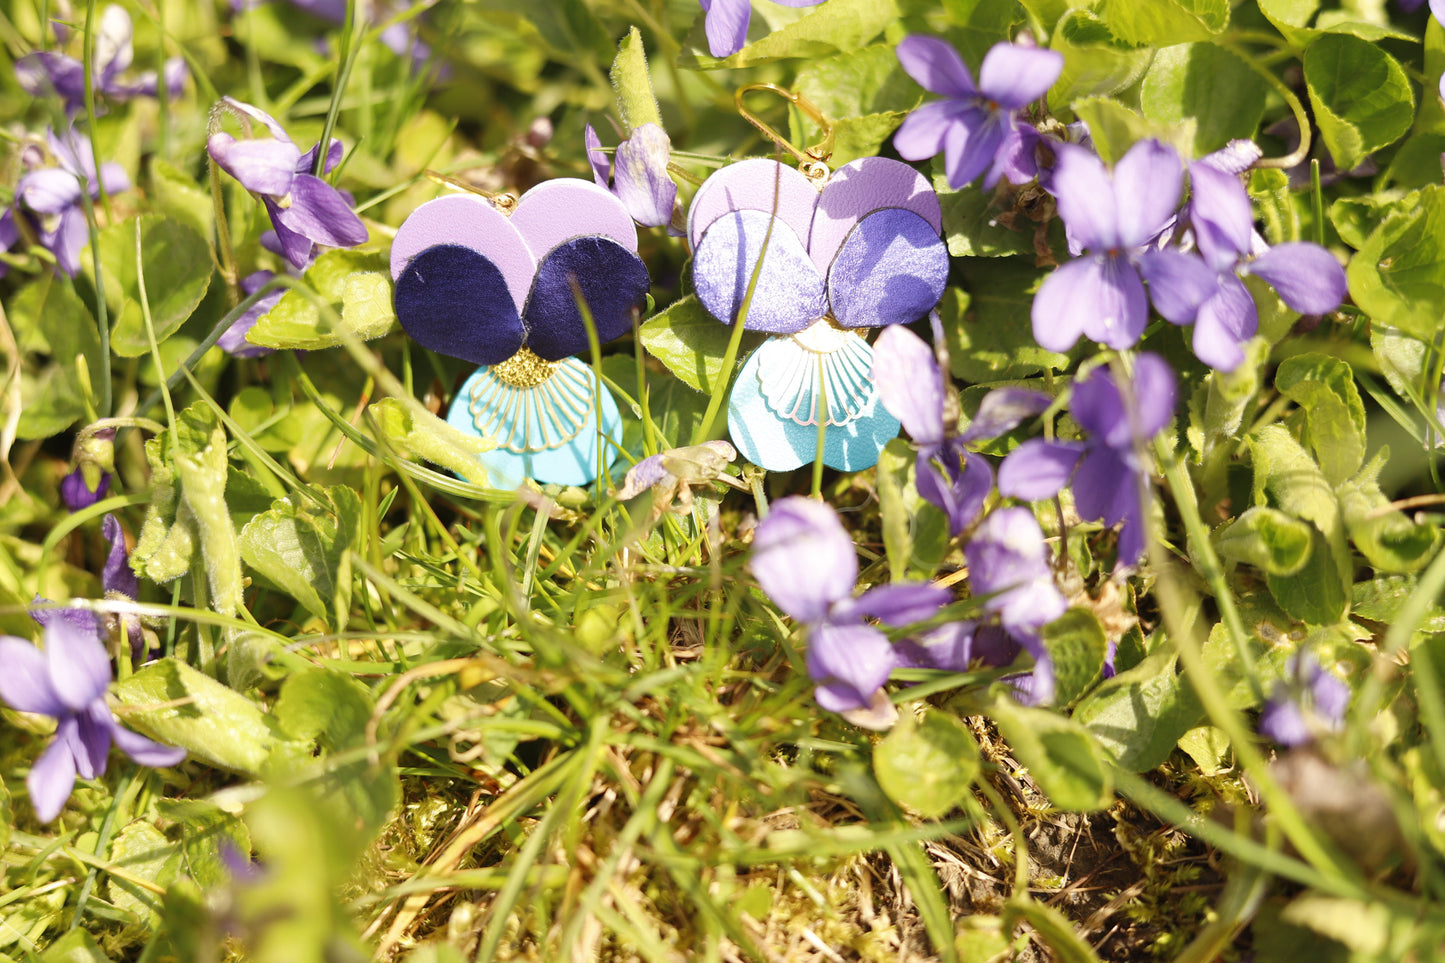 Boucles d’oreilles Pensées - bleu, mauve et violet métallisé